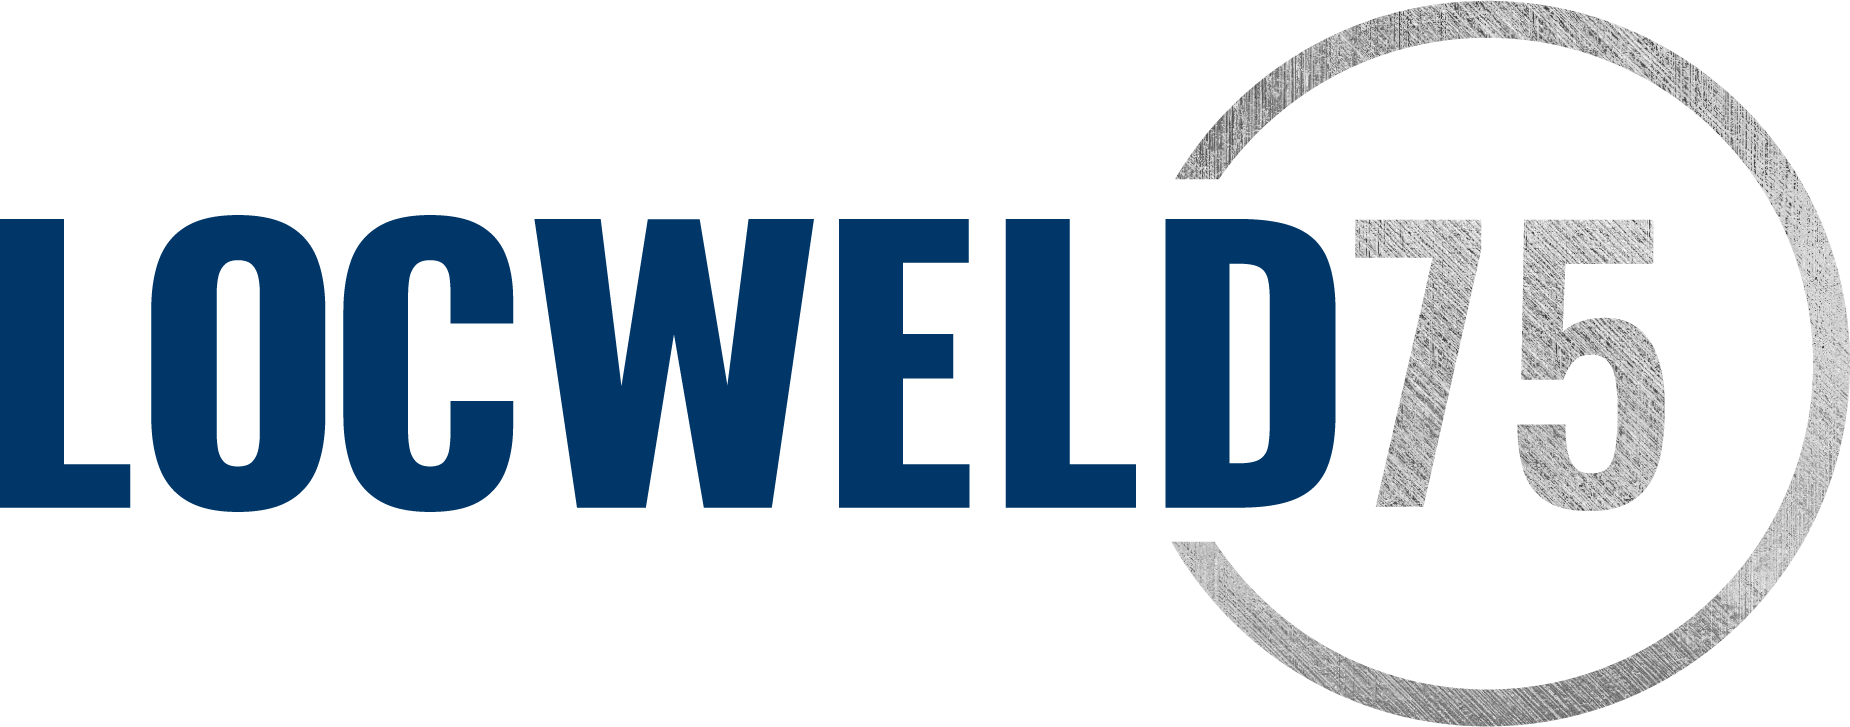 Locweld Blue logo